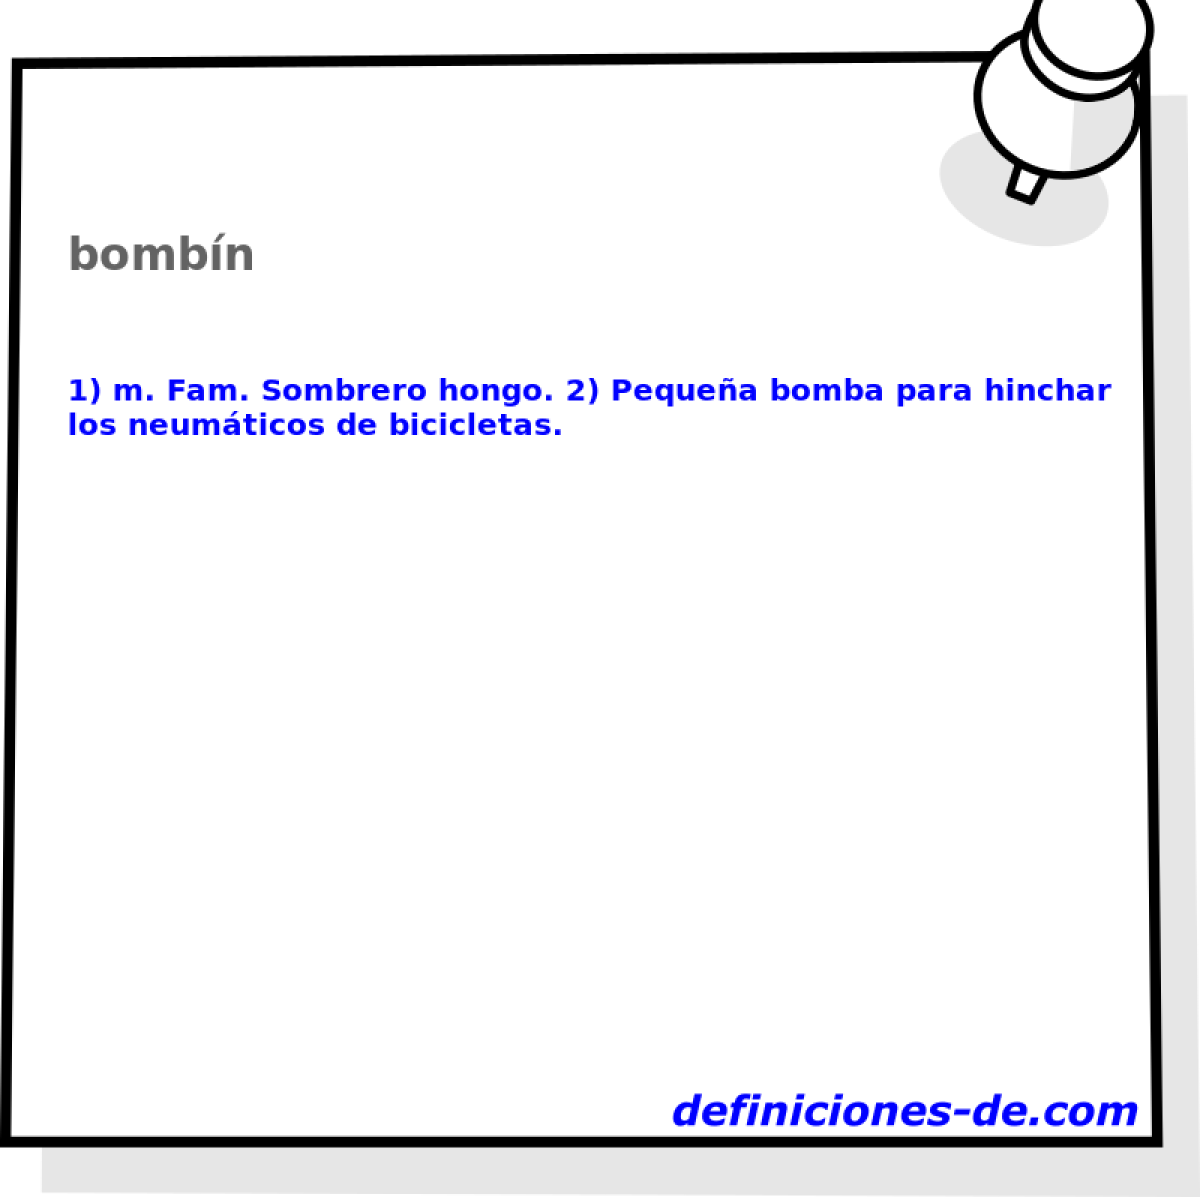 bombn 